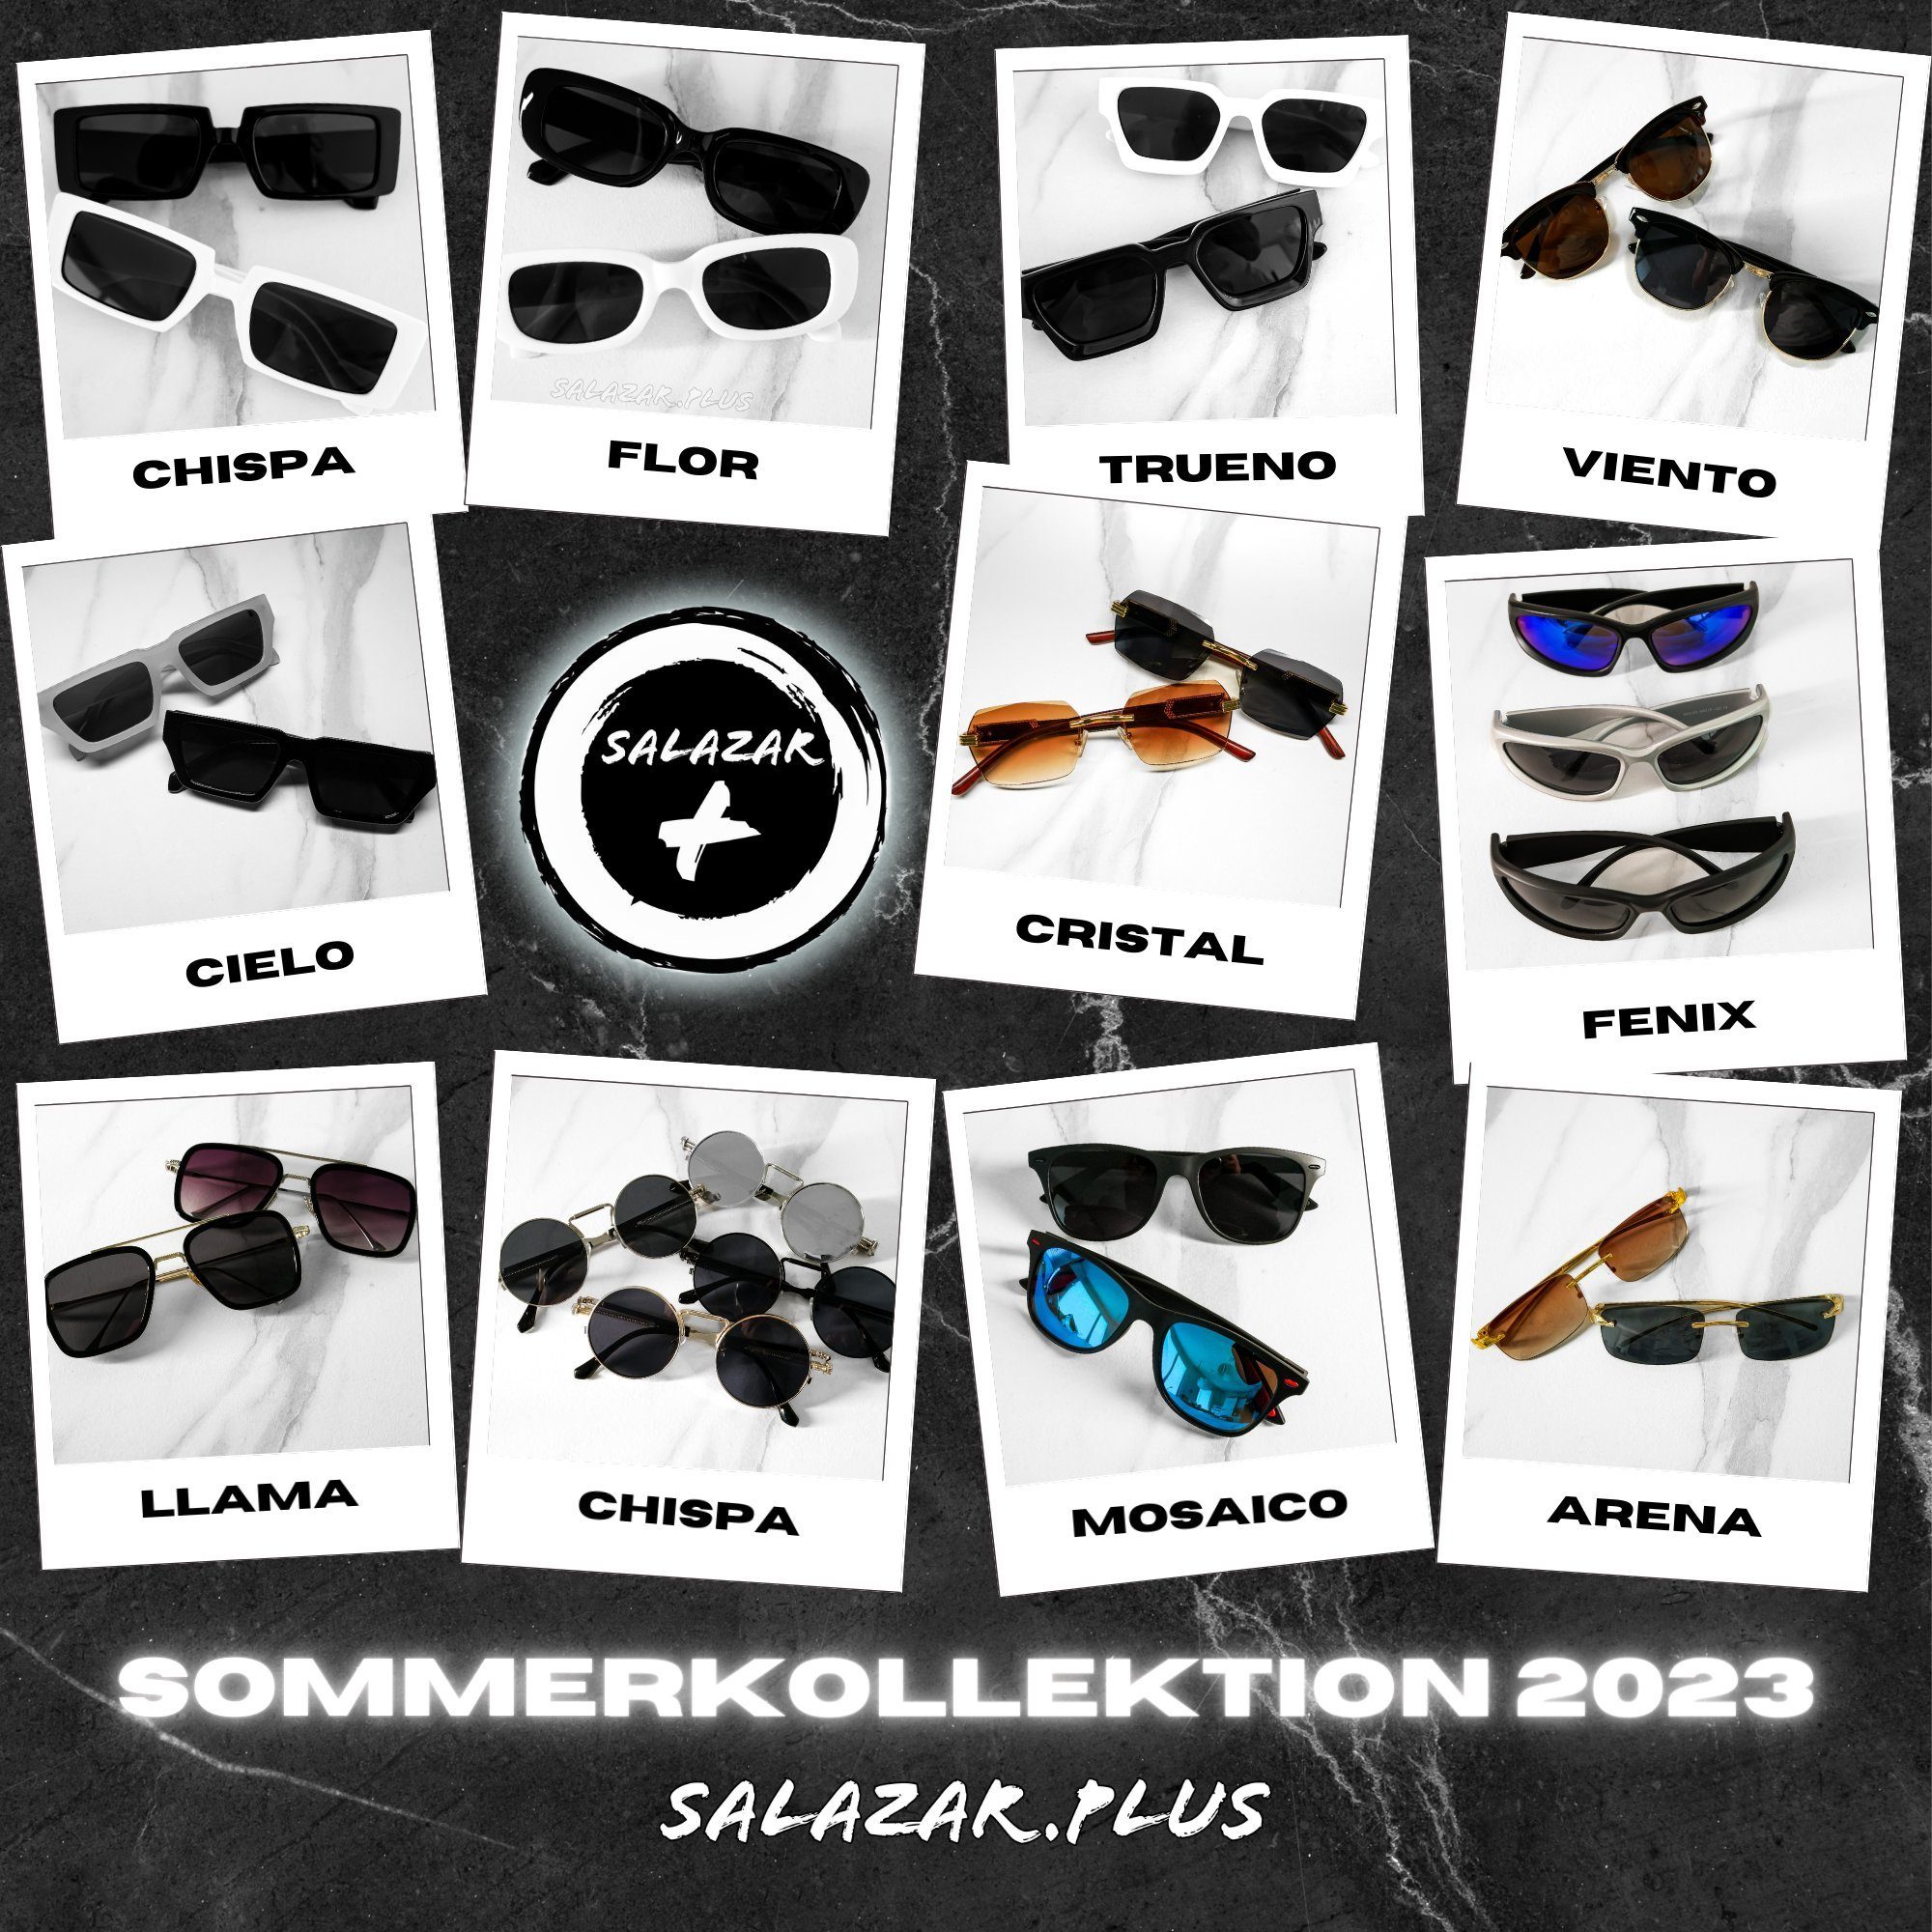 Farben Damen Sonnenbrille 2 Unisex salazar.plus Breit Rechteckig Brille Schwarz Herren Weiss